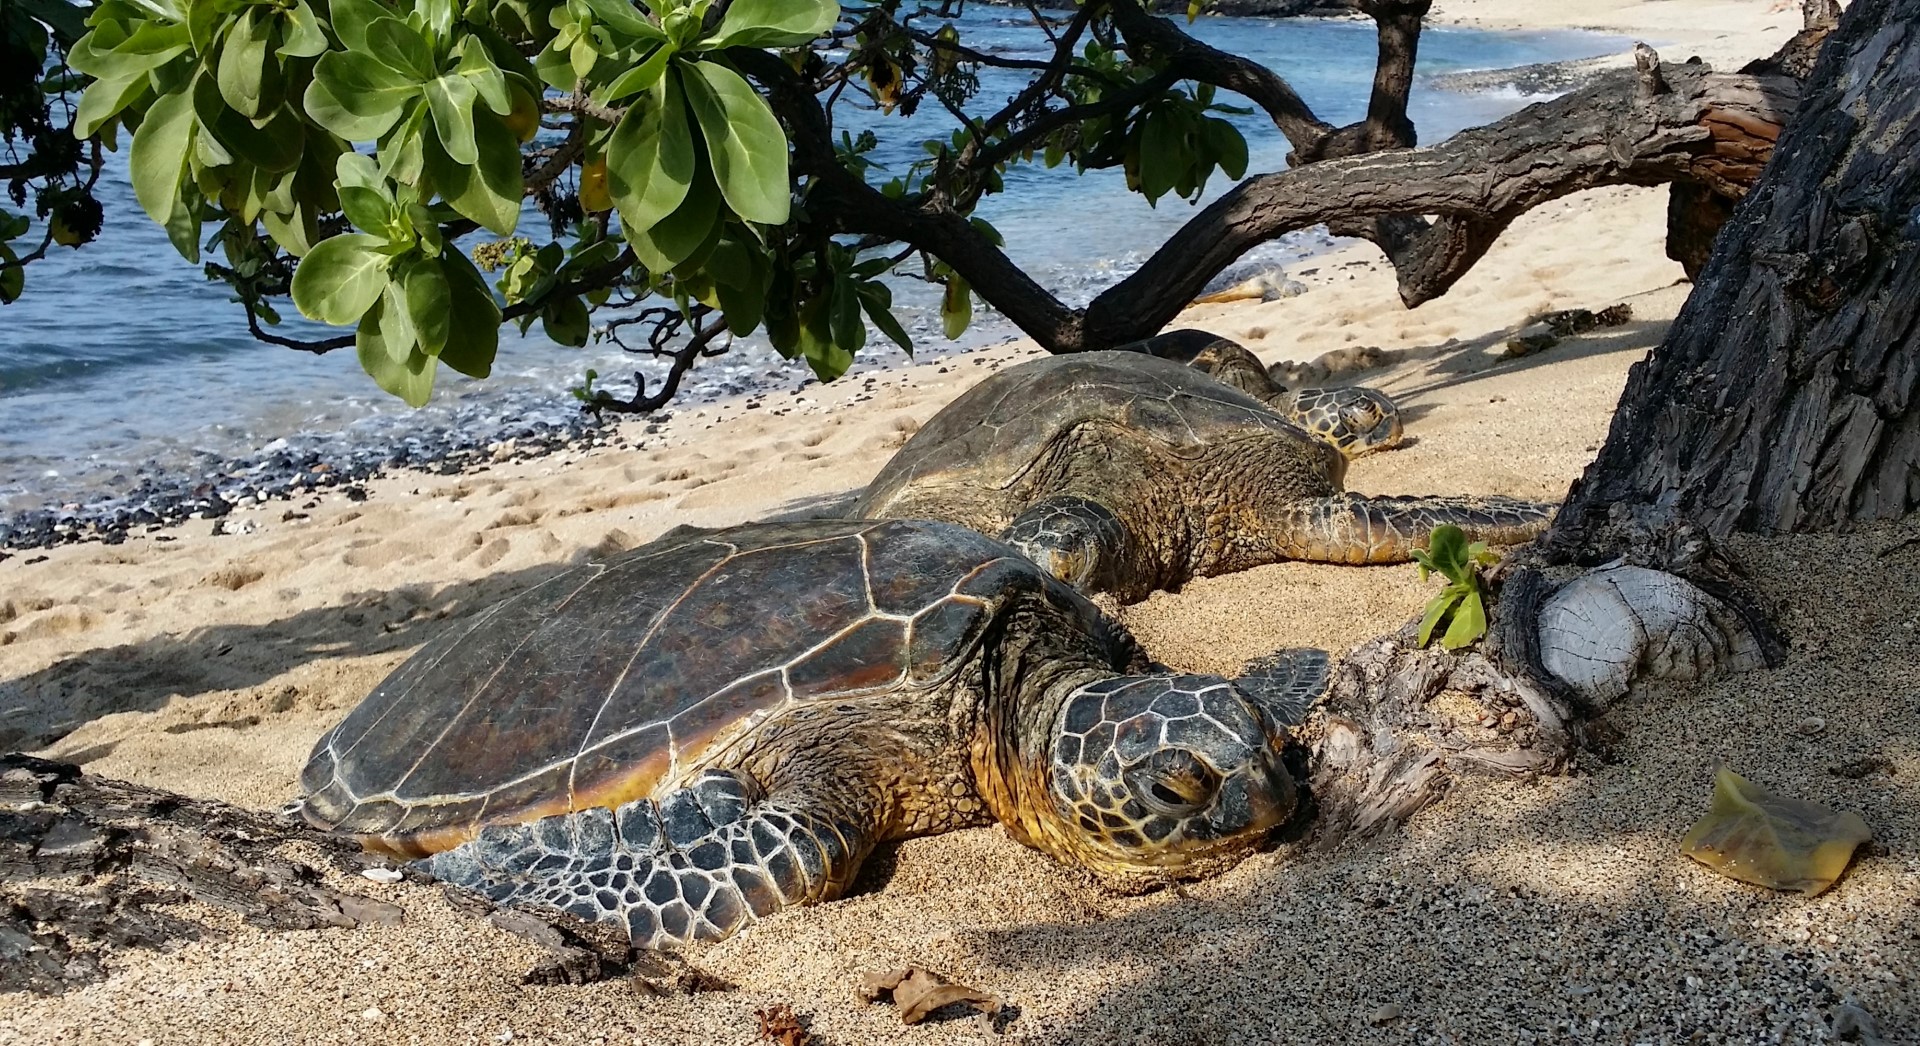 Sea Turtles at Kukio Beach on Big Island-Bryce Stevens (Large)